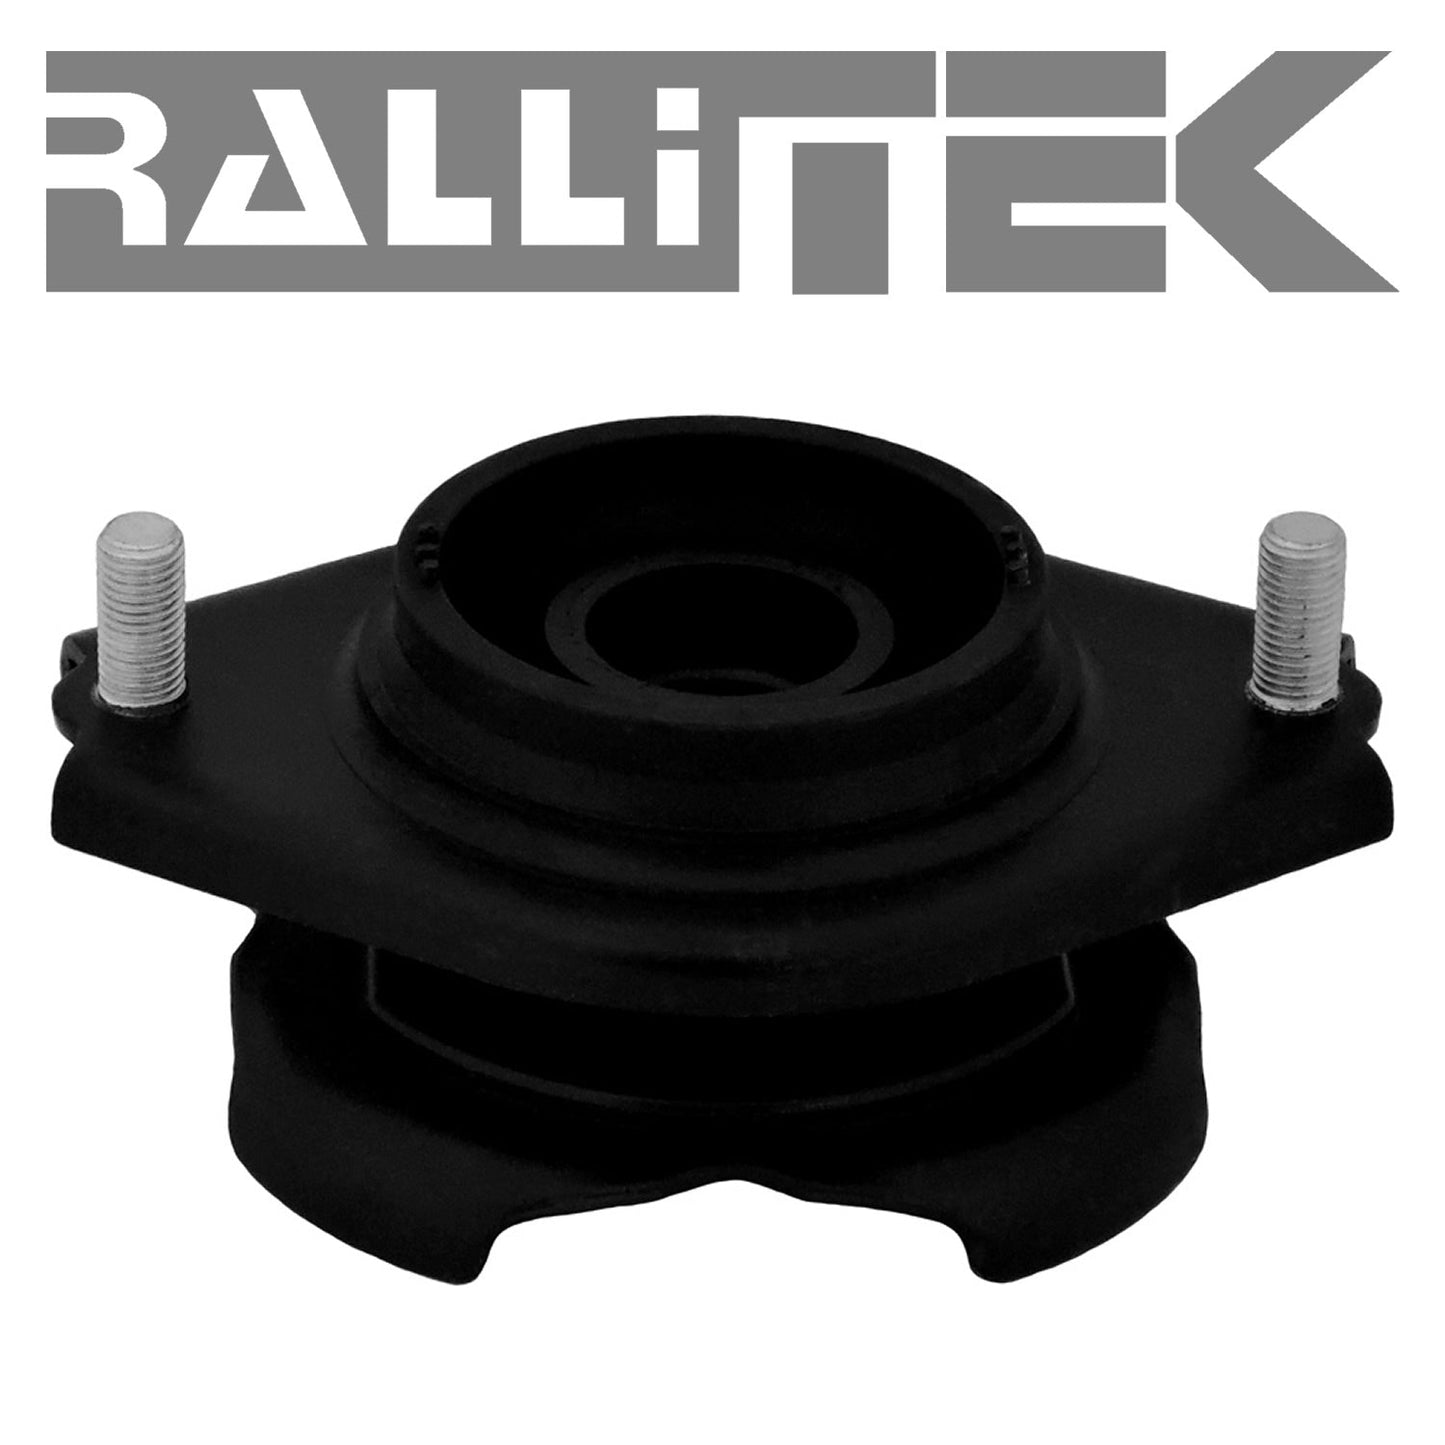 RalliTEK 0.5" Rear Overload Springs & KYB Excel-G Struts Assembled - Forester 2009-2013